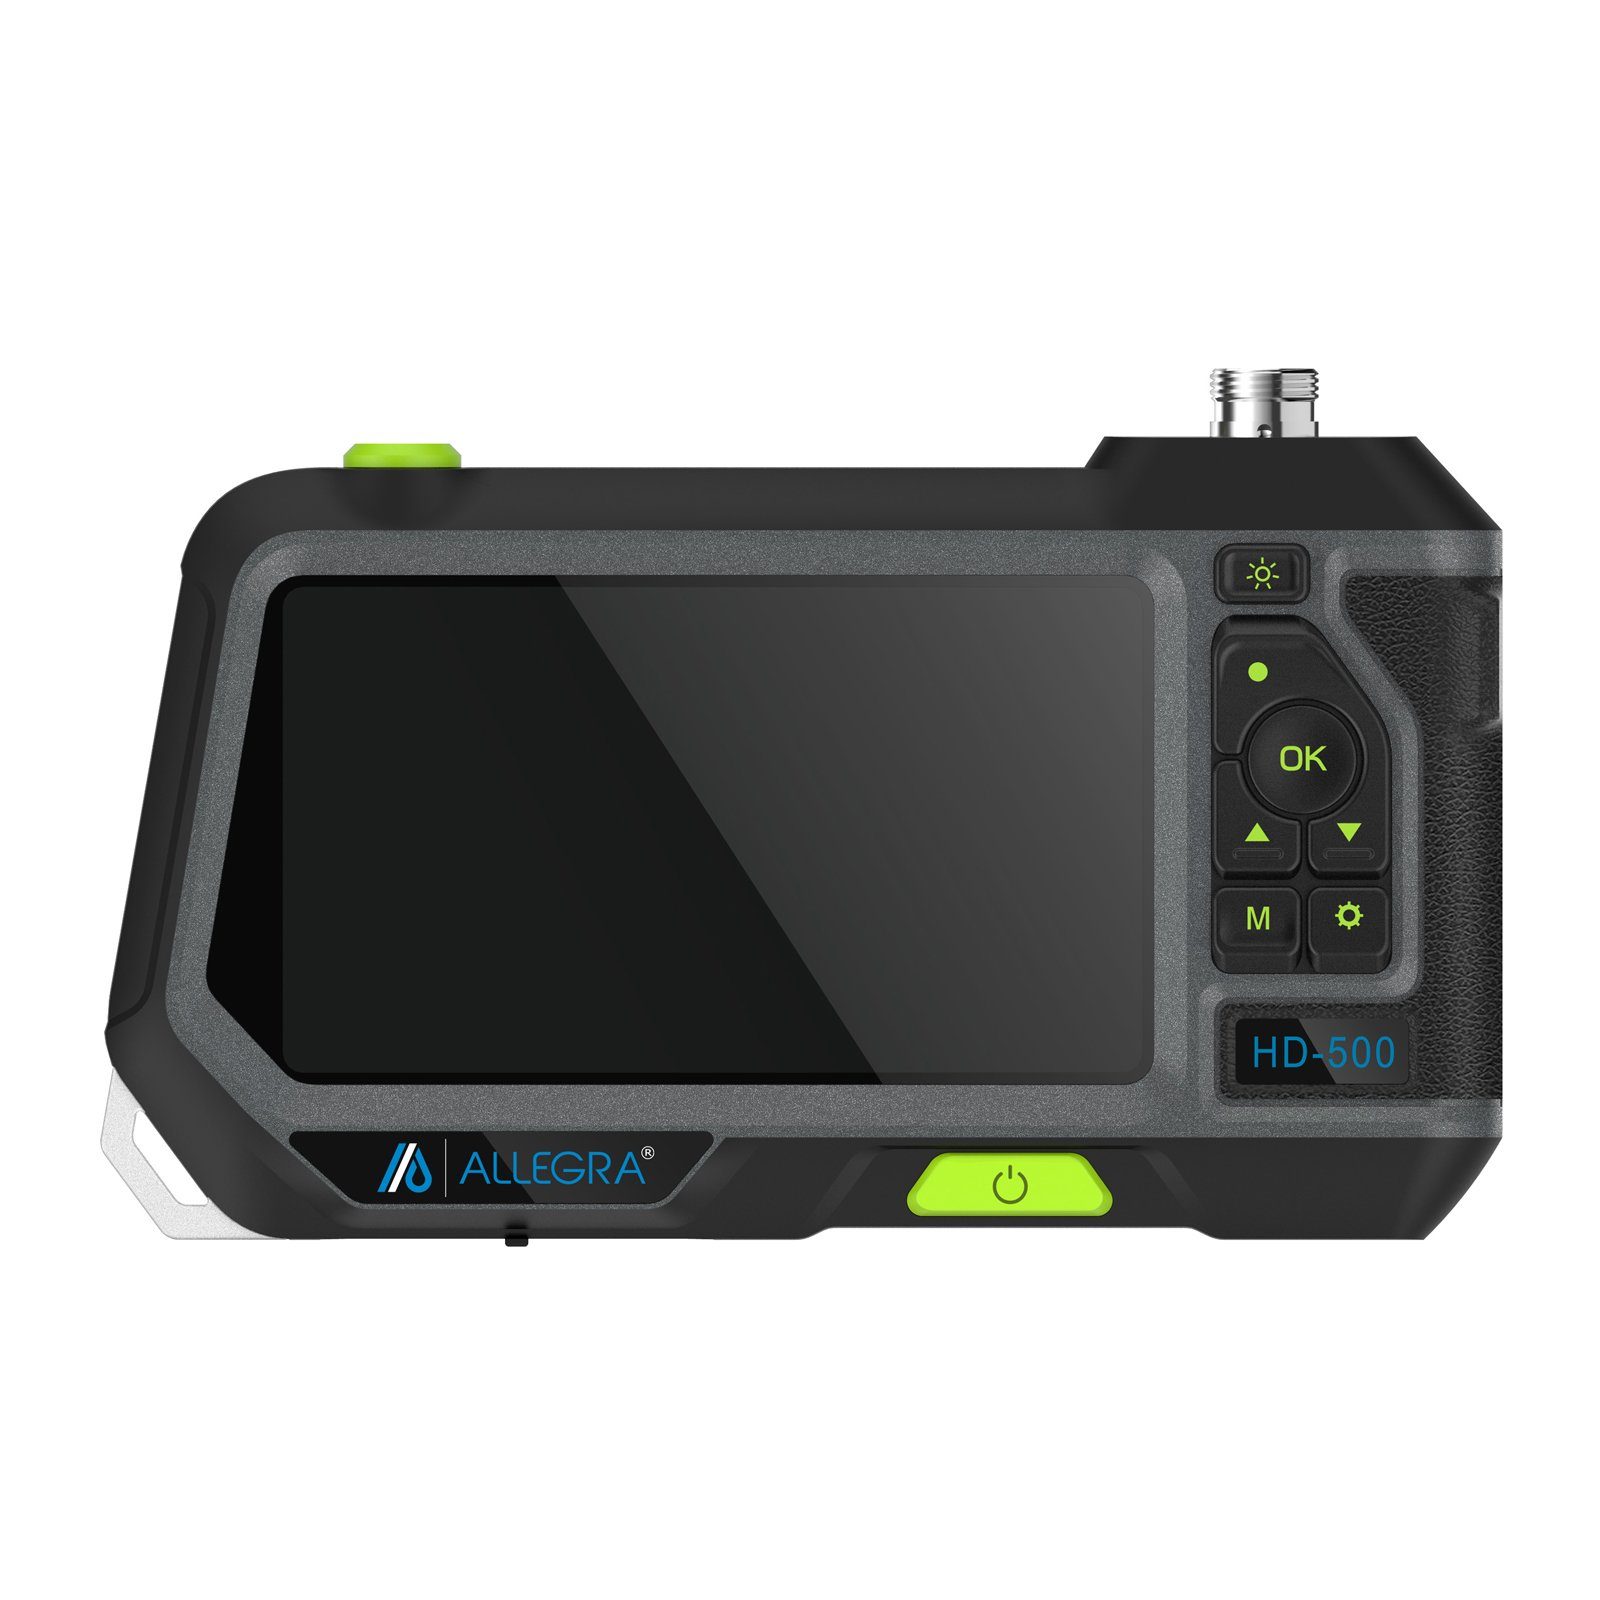 HD-500 - 3m Inspektionskamera Dualkopf Endoskop mit ALLEGRA ALLEGRA Kamerasonde